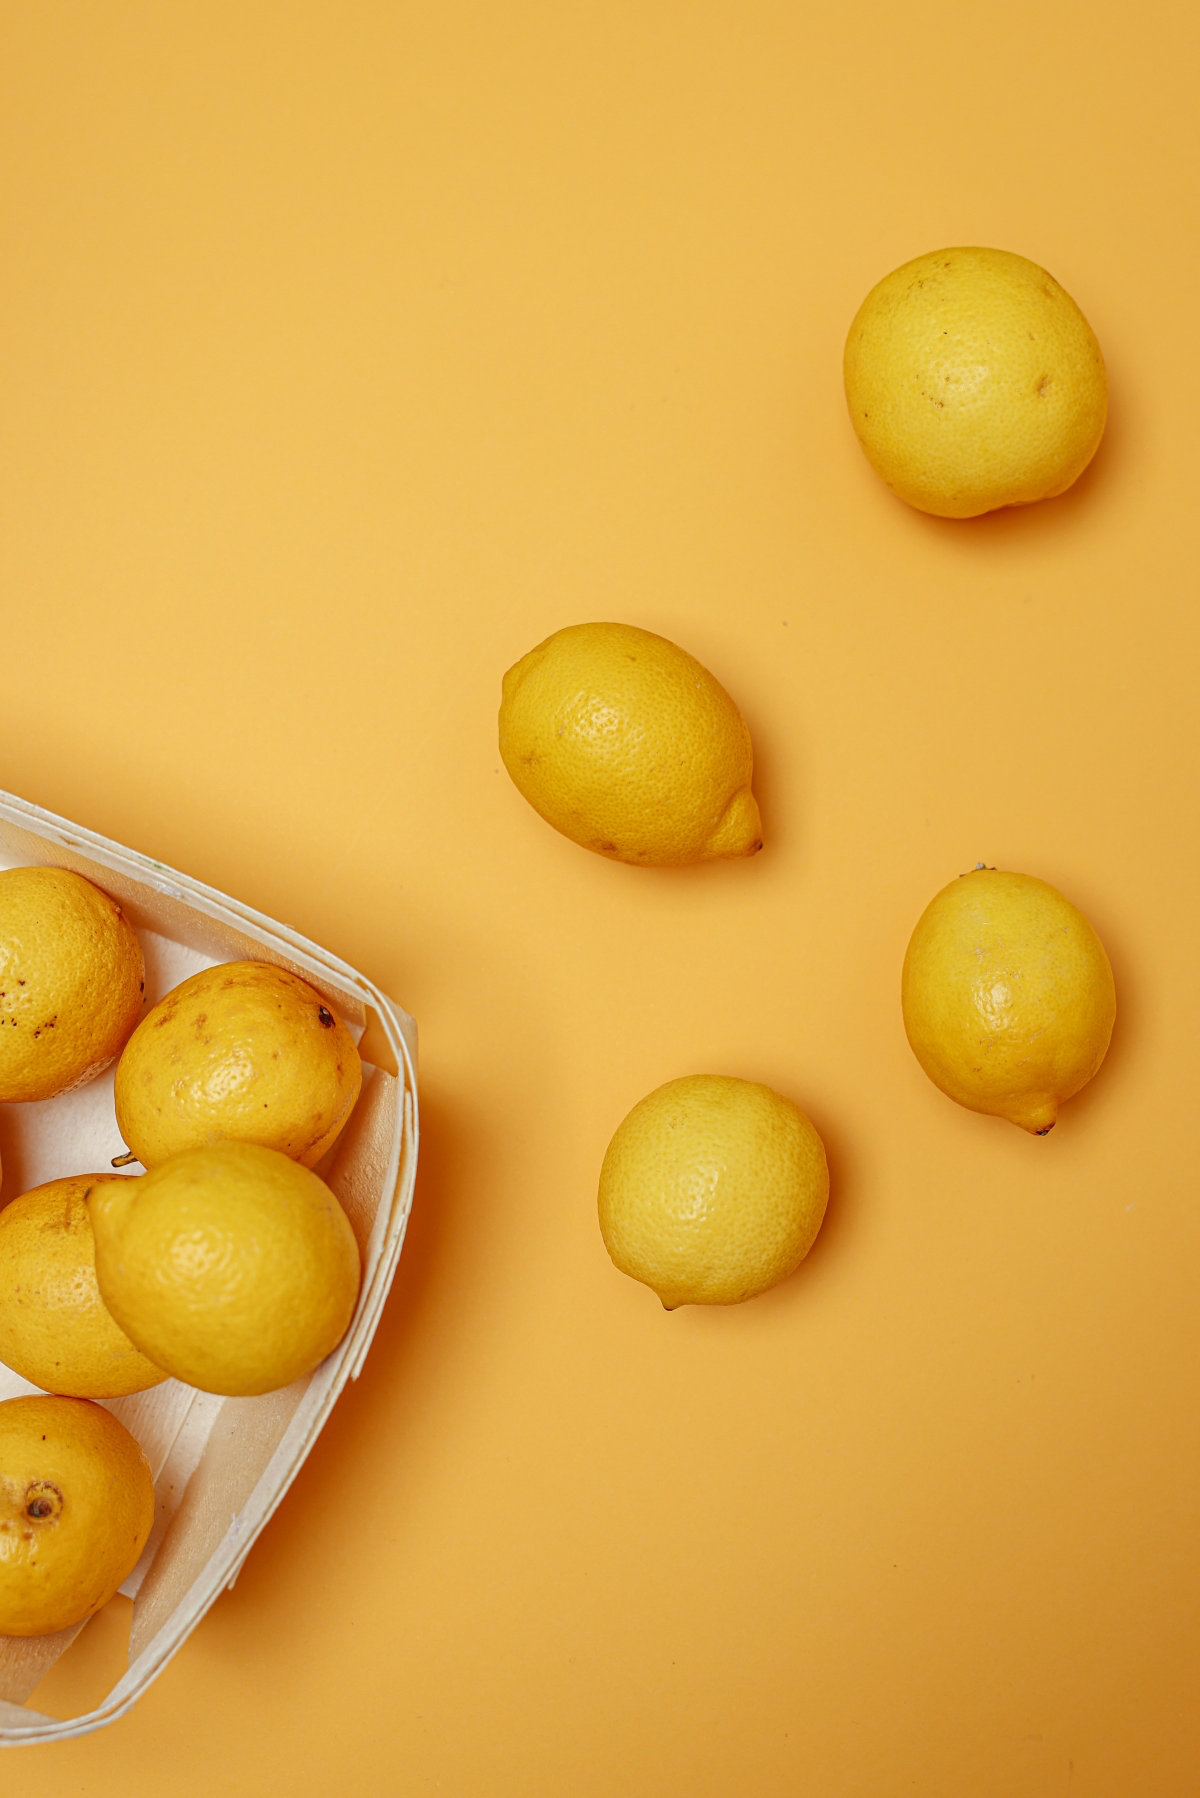 how to pick ripe fruit lemons